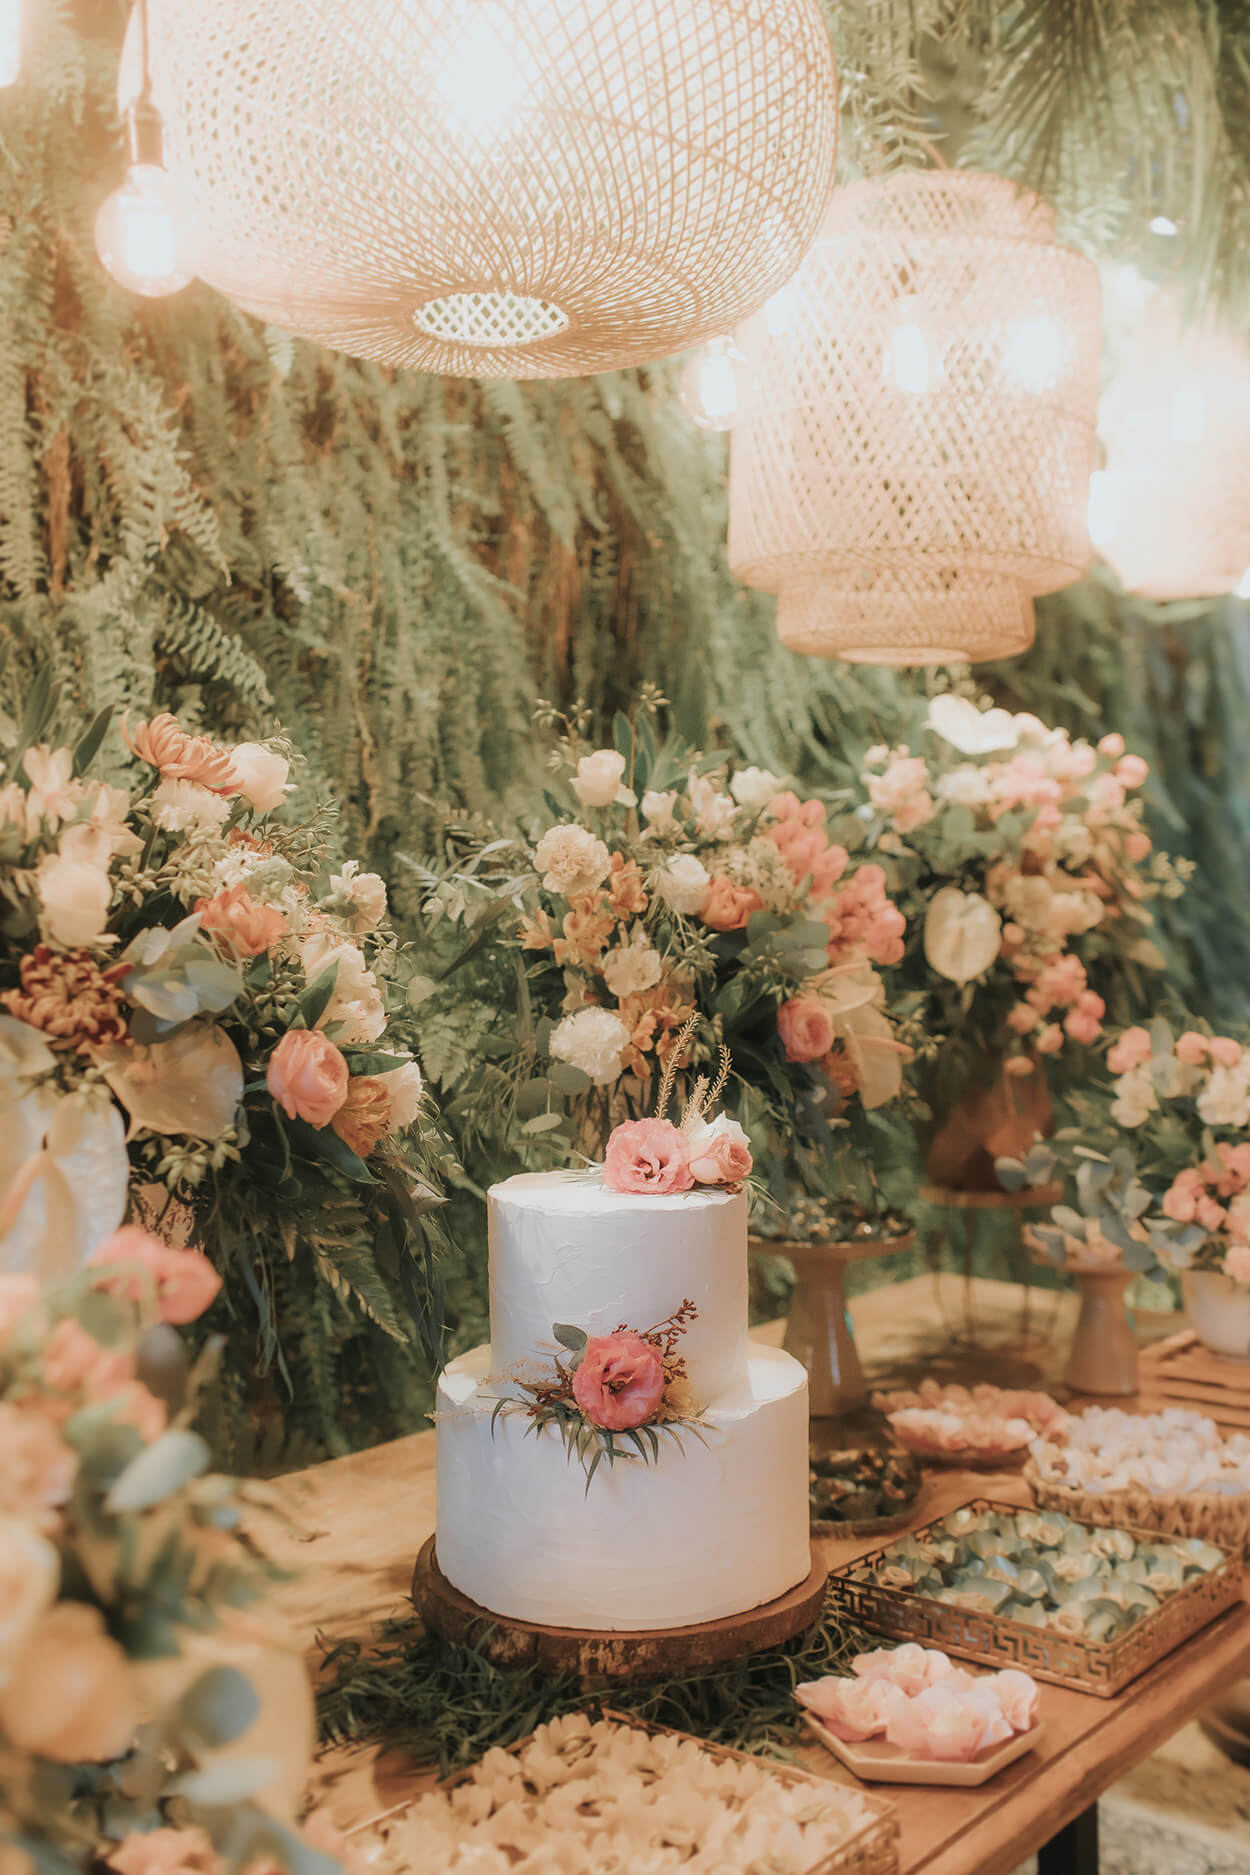 painel com plantas e mesa do bolo com vasos de flores brancas e rosas